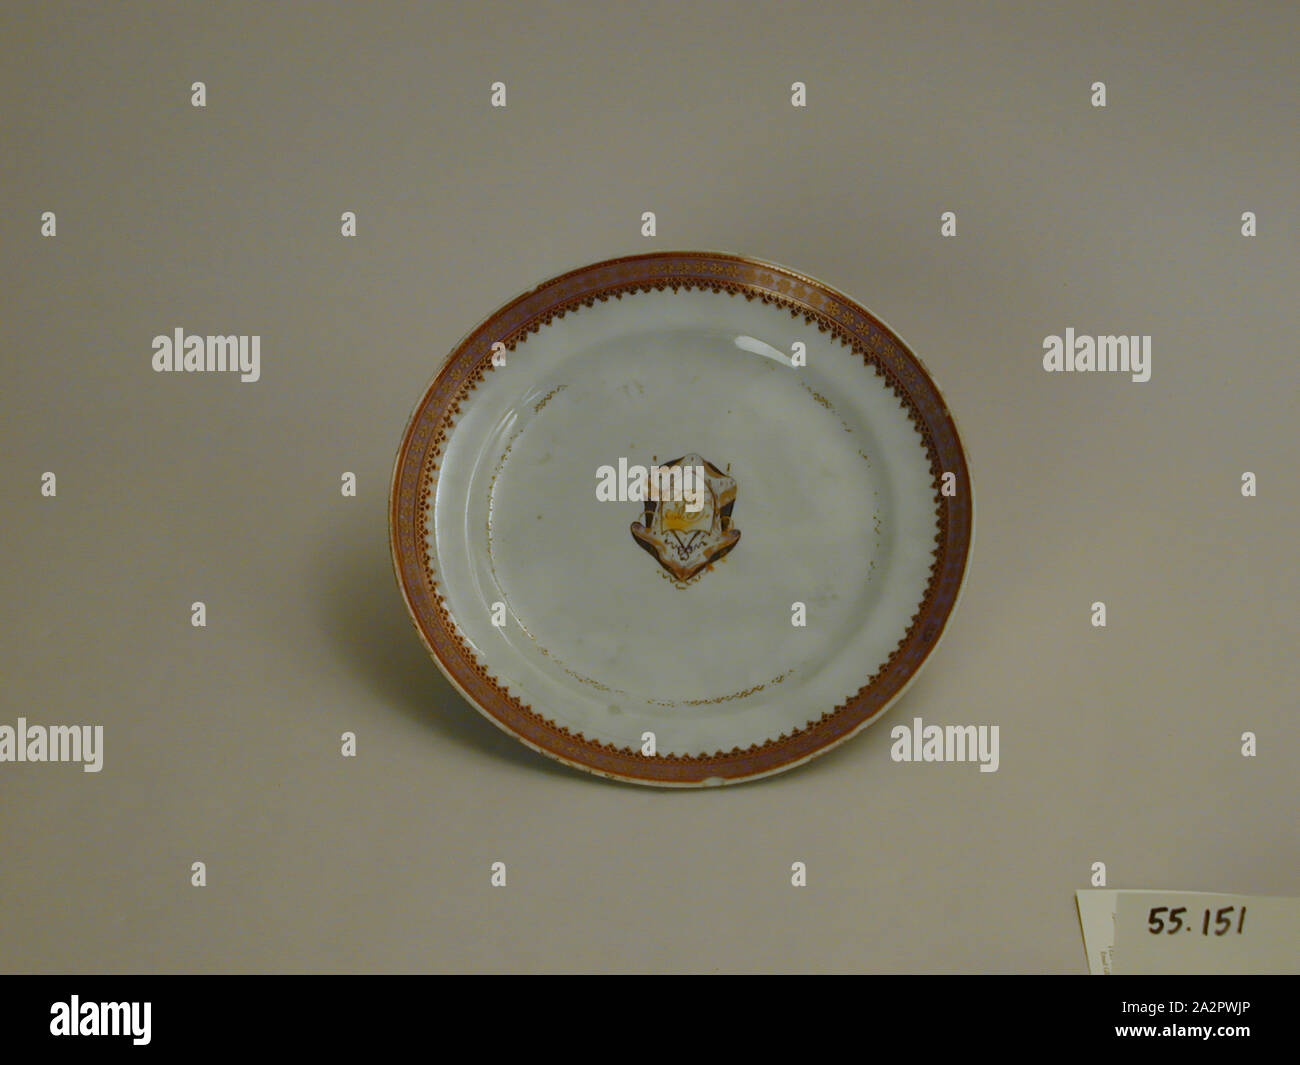 Inconnu (Chinois), la plaque, fin du xviiie siècle, émaillée porcelaine pâte dure avec émail polychrome et dorure, Hauteur x diamètre : 7/8 x 7 5/8 in. (2,2 x 19,4 cm Banque D'Images